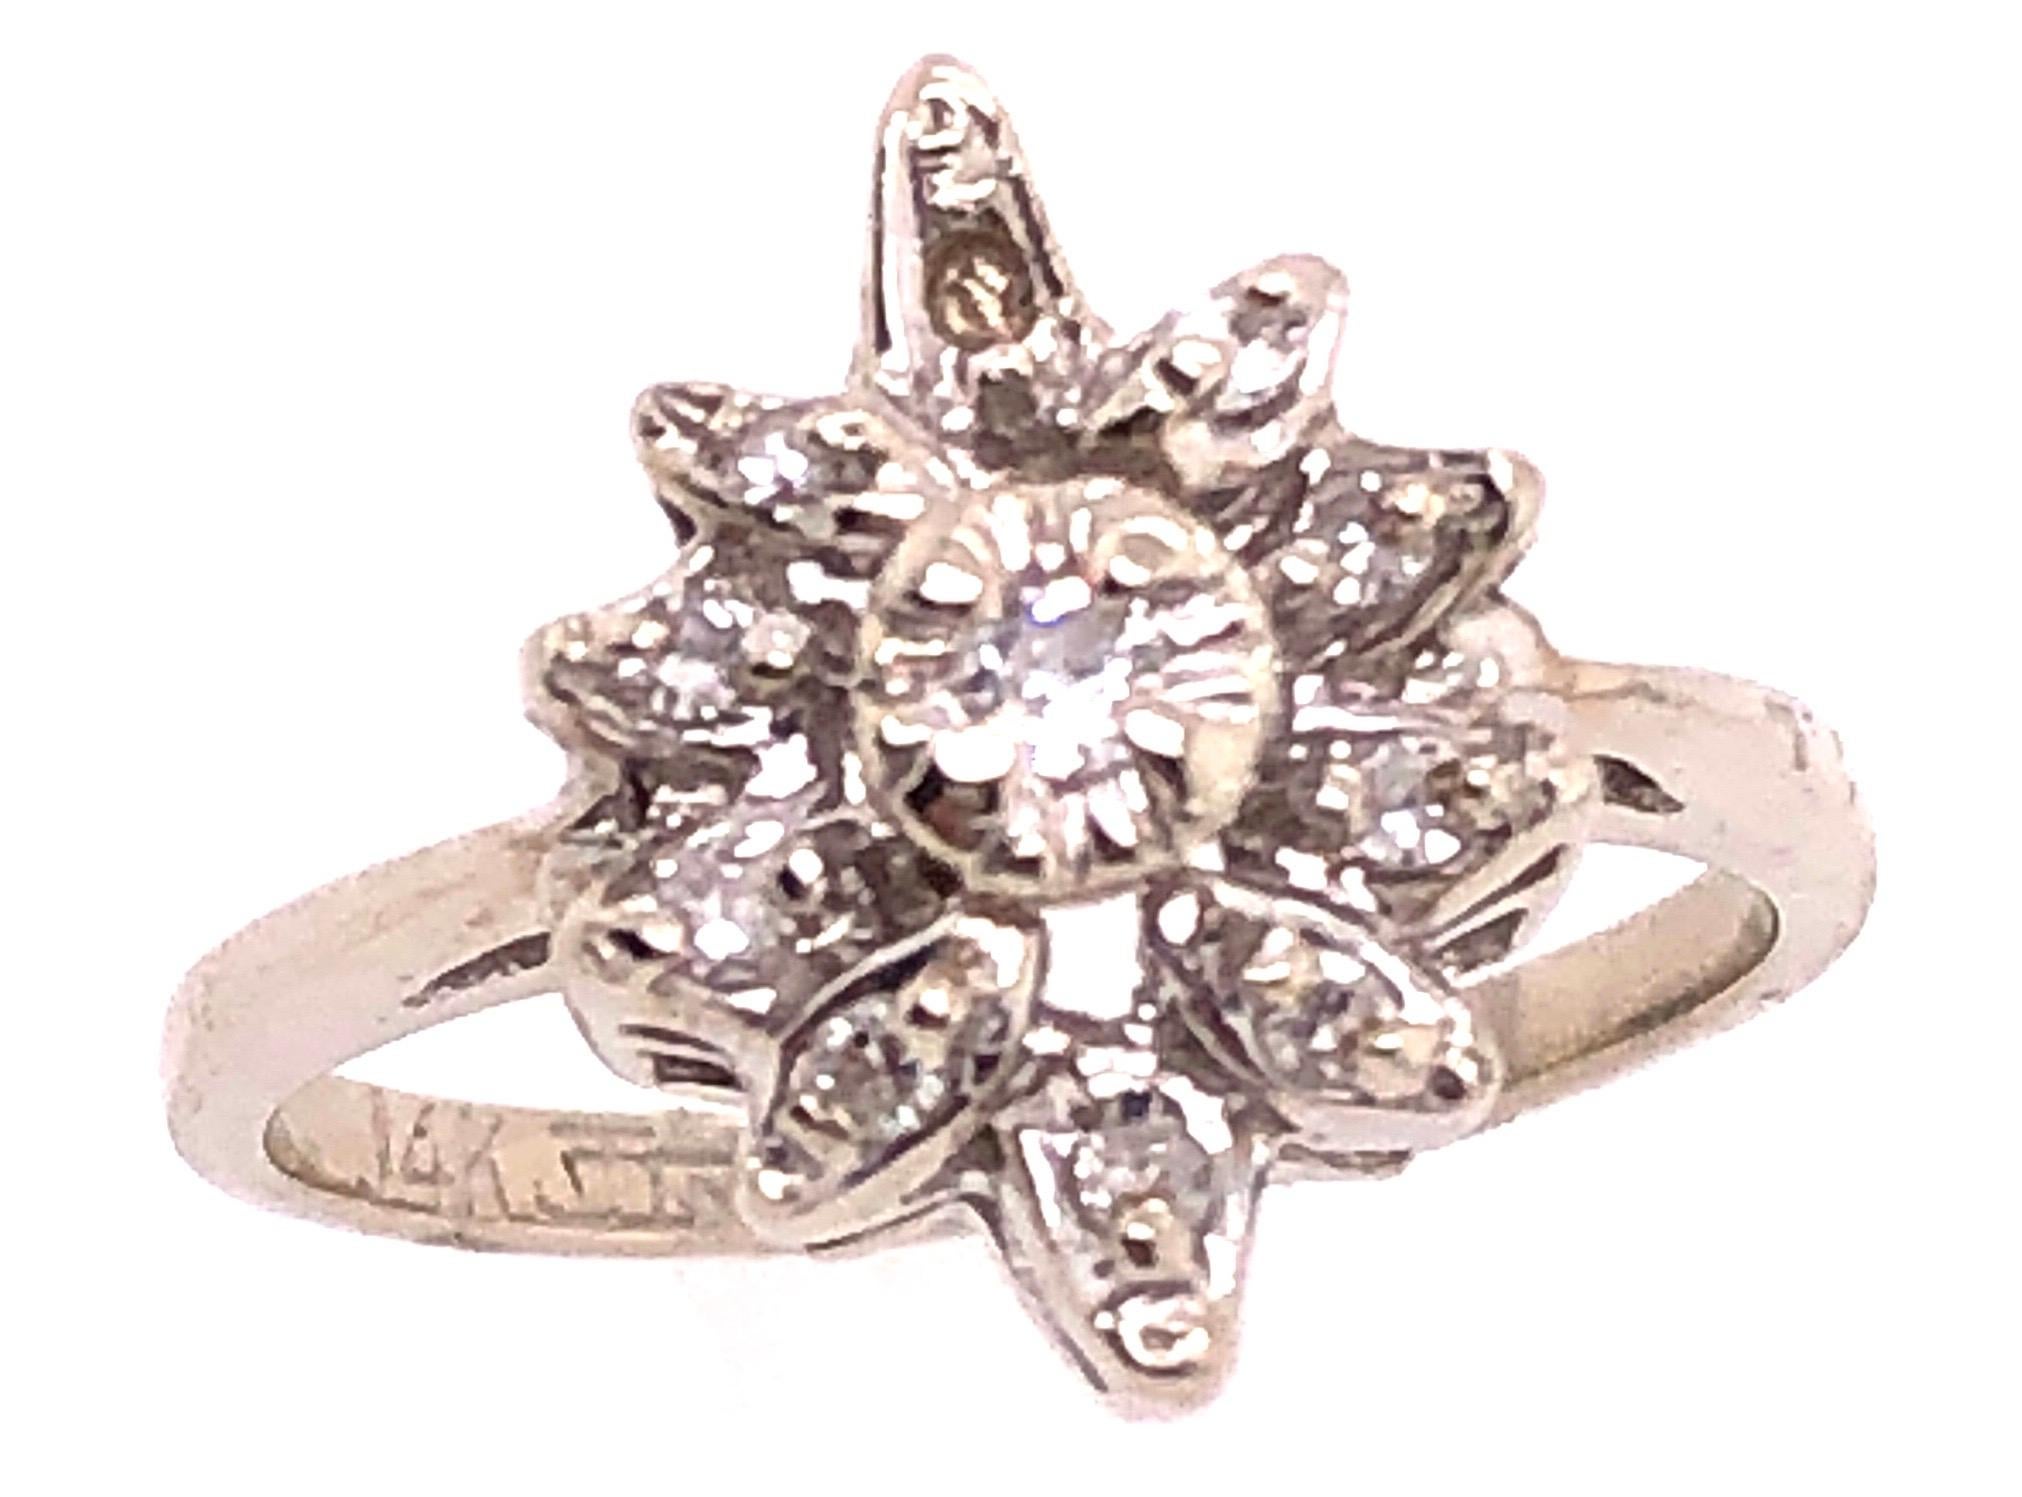 14 Karat Weißgold Zeitgenössischer Ring mit Diamanten 0,33 Gesamtgewicht der Diamanten.
Größe 5.75
3.29 Gramm Gesamtgewicht.